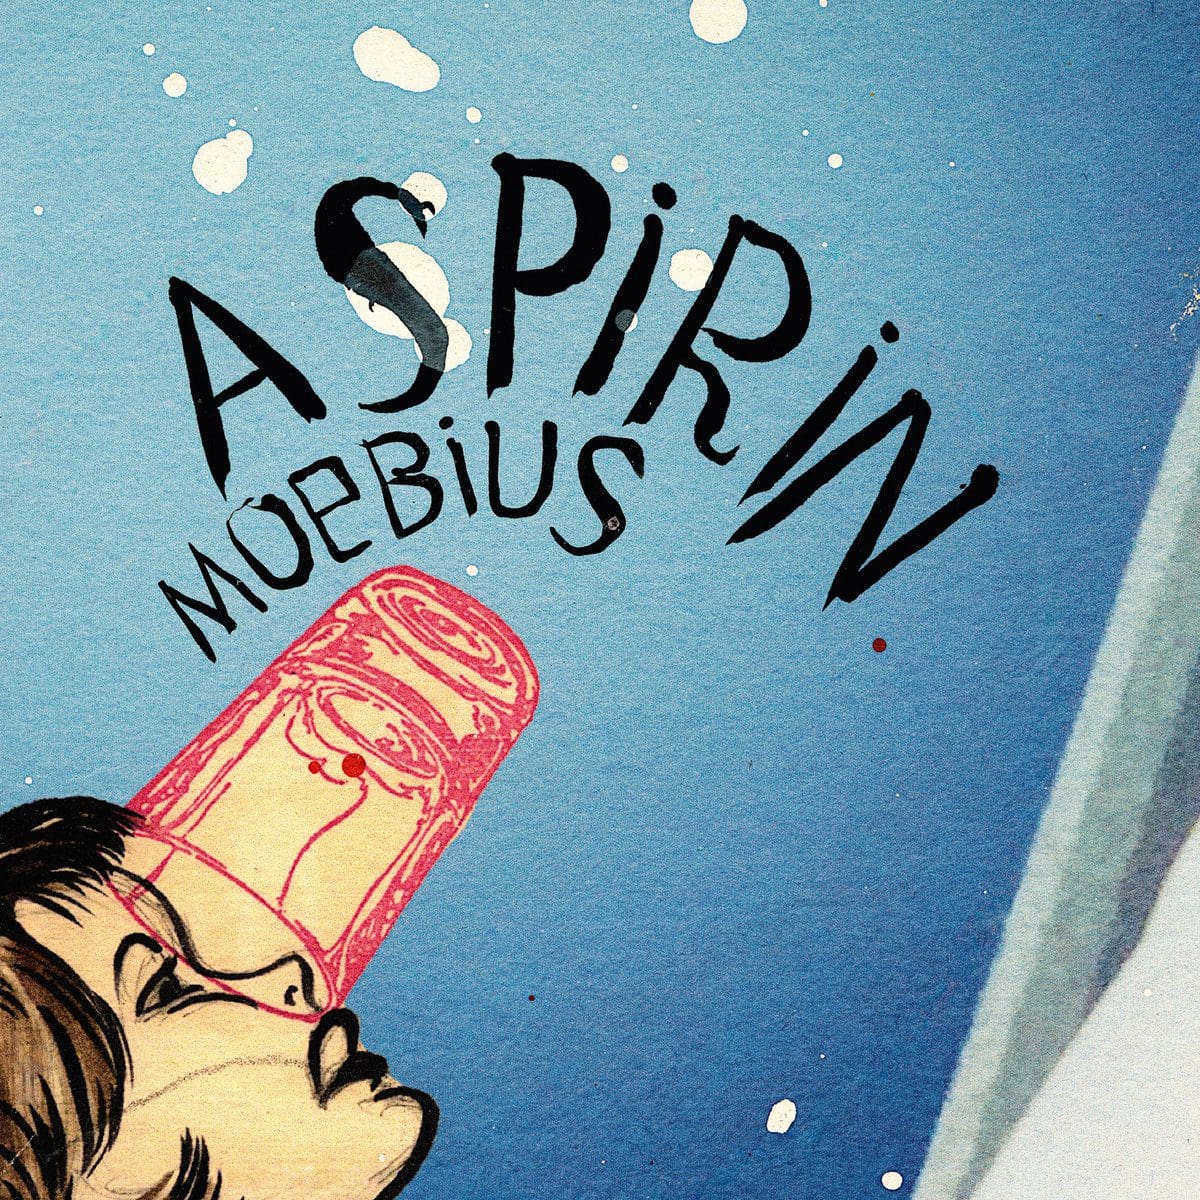 Krautrock protagonist Dieter Moebius gets posthumous album released via Curious Music: 'Aspirin'